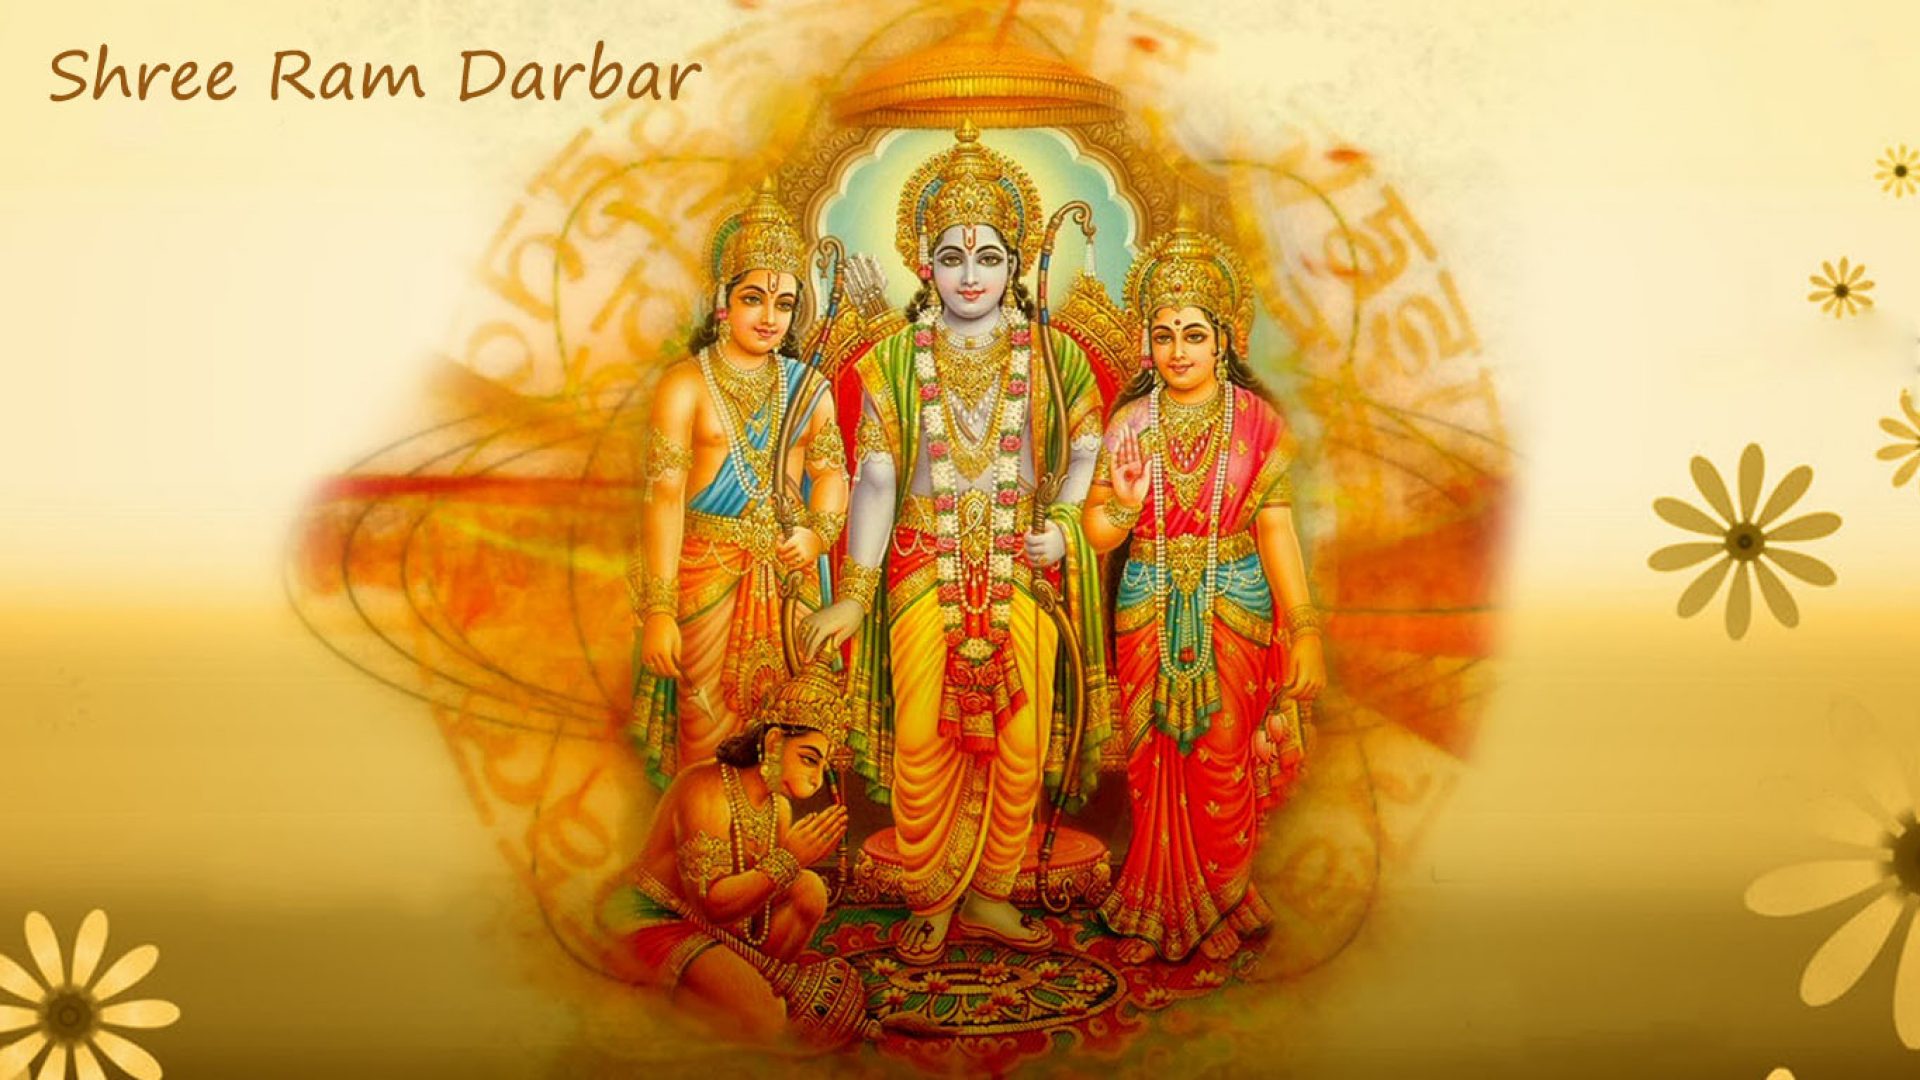 Ram Darbar Image Wallpapers